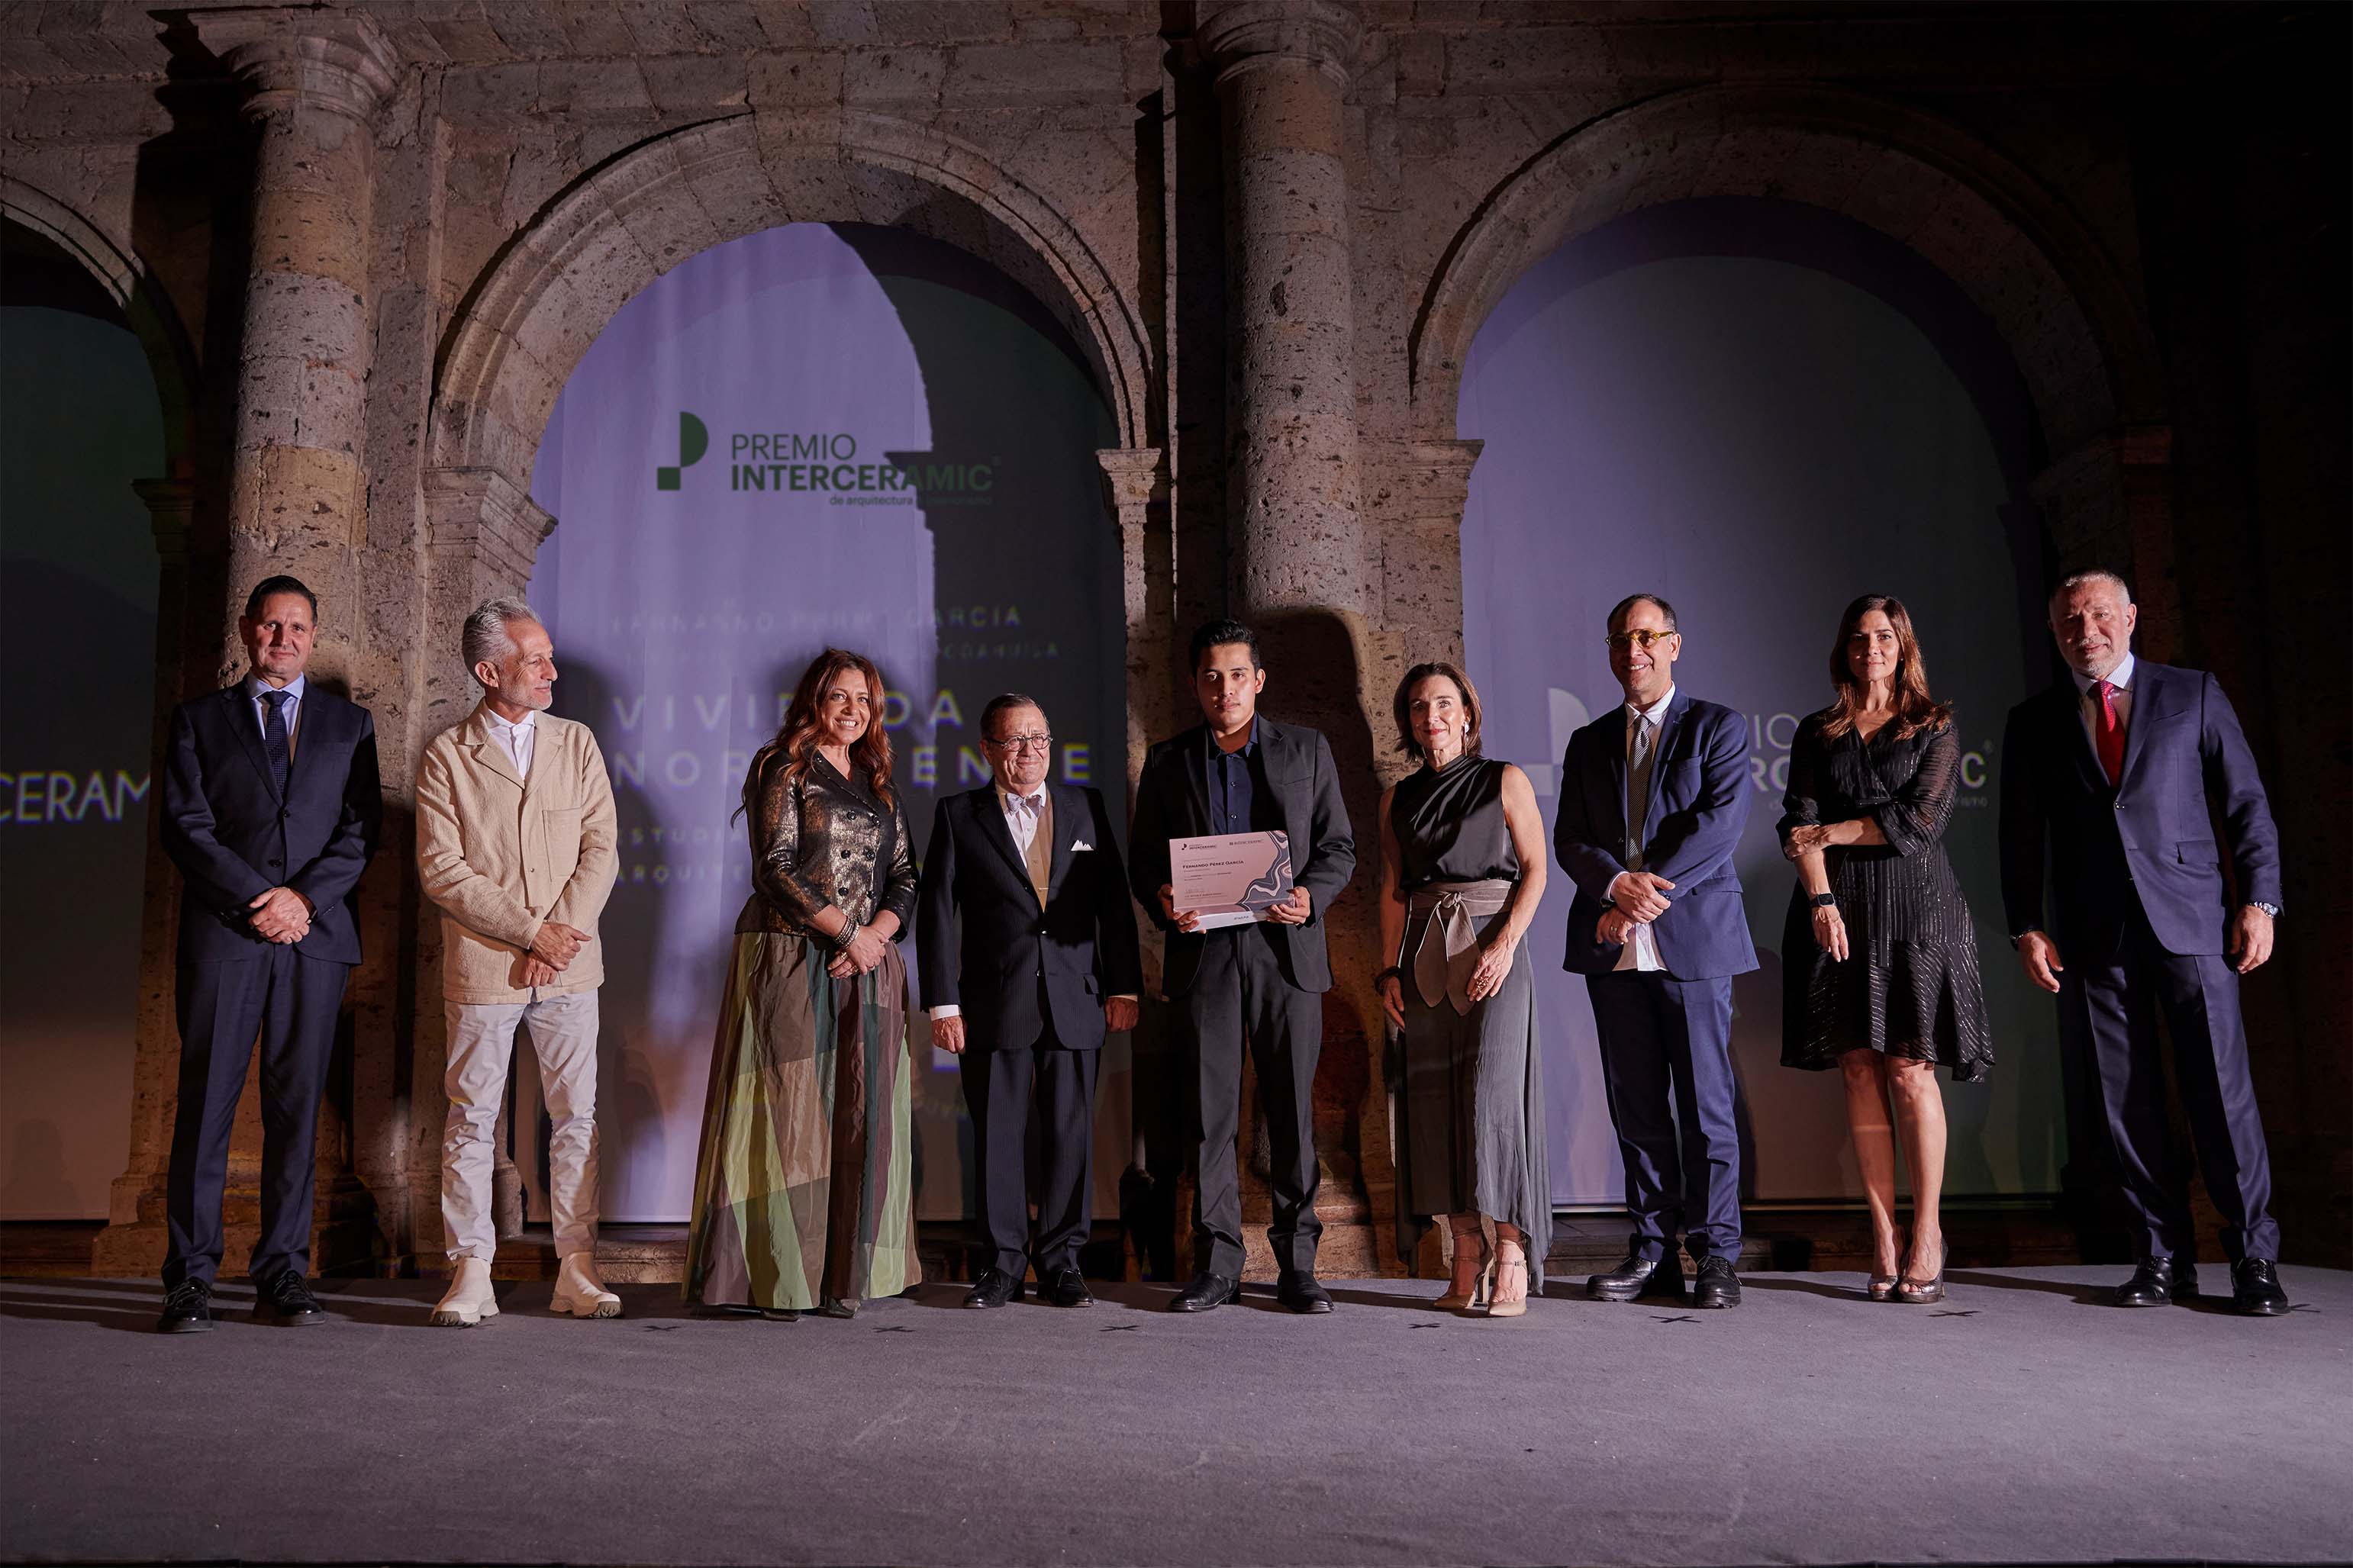 Recibe alumno de la UAdeC Premio Interceramic de Arquitectura en Jalisco